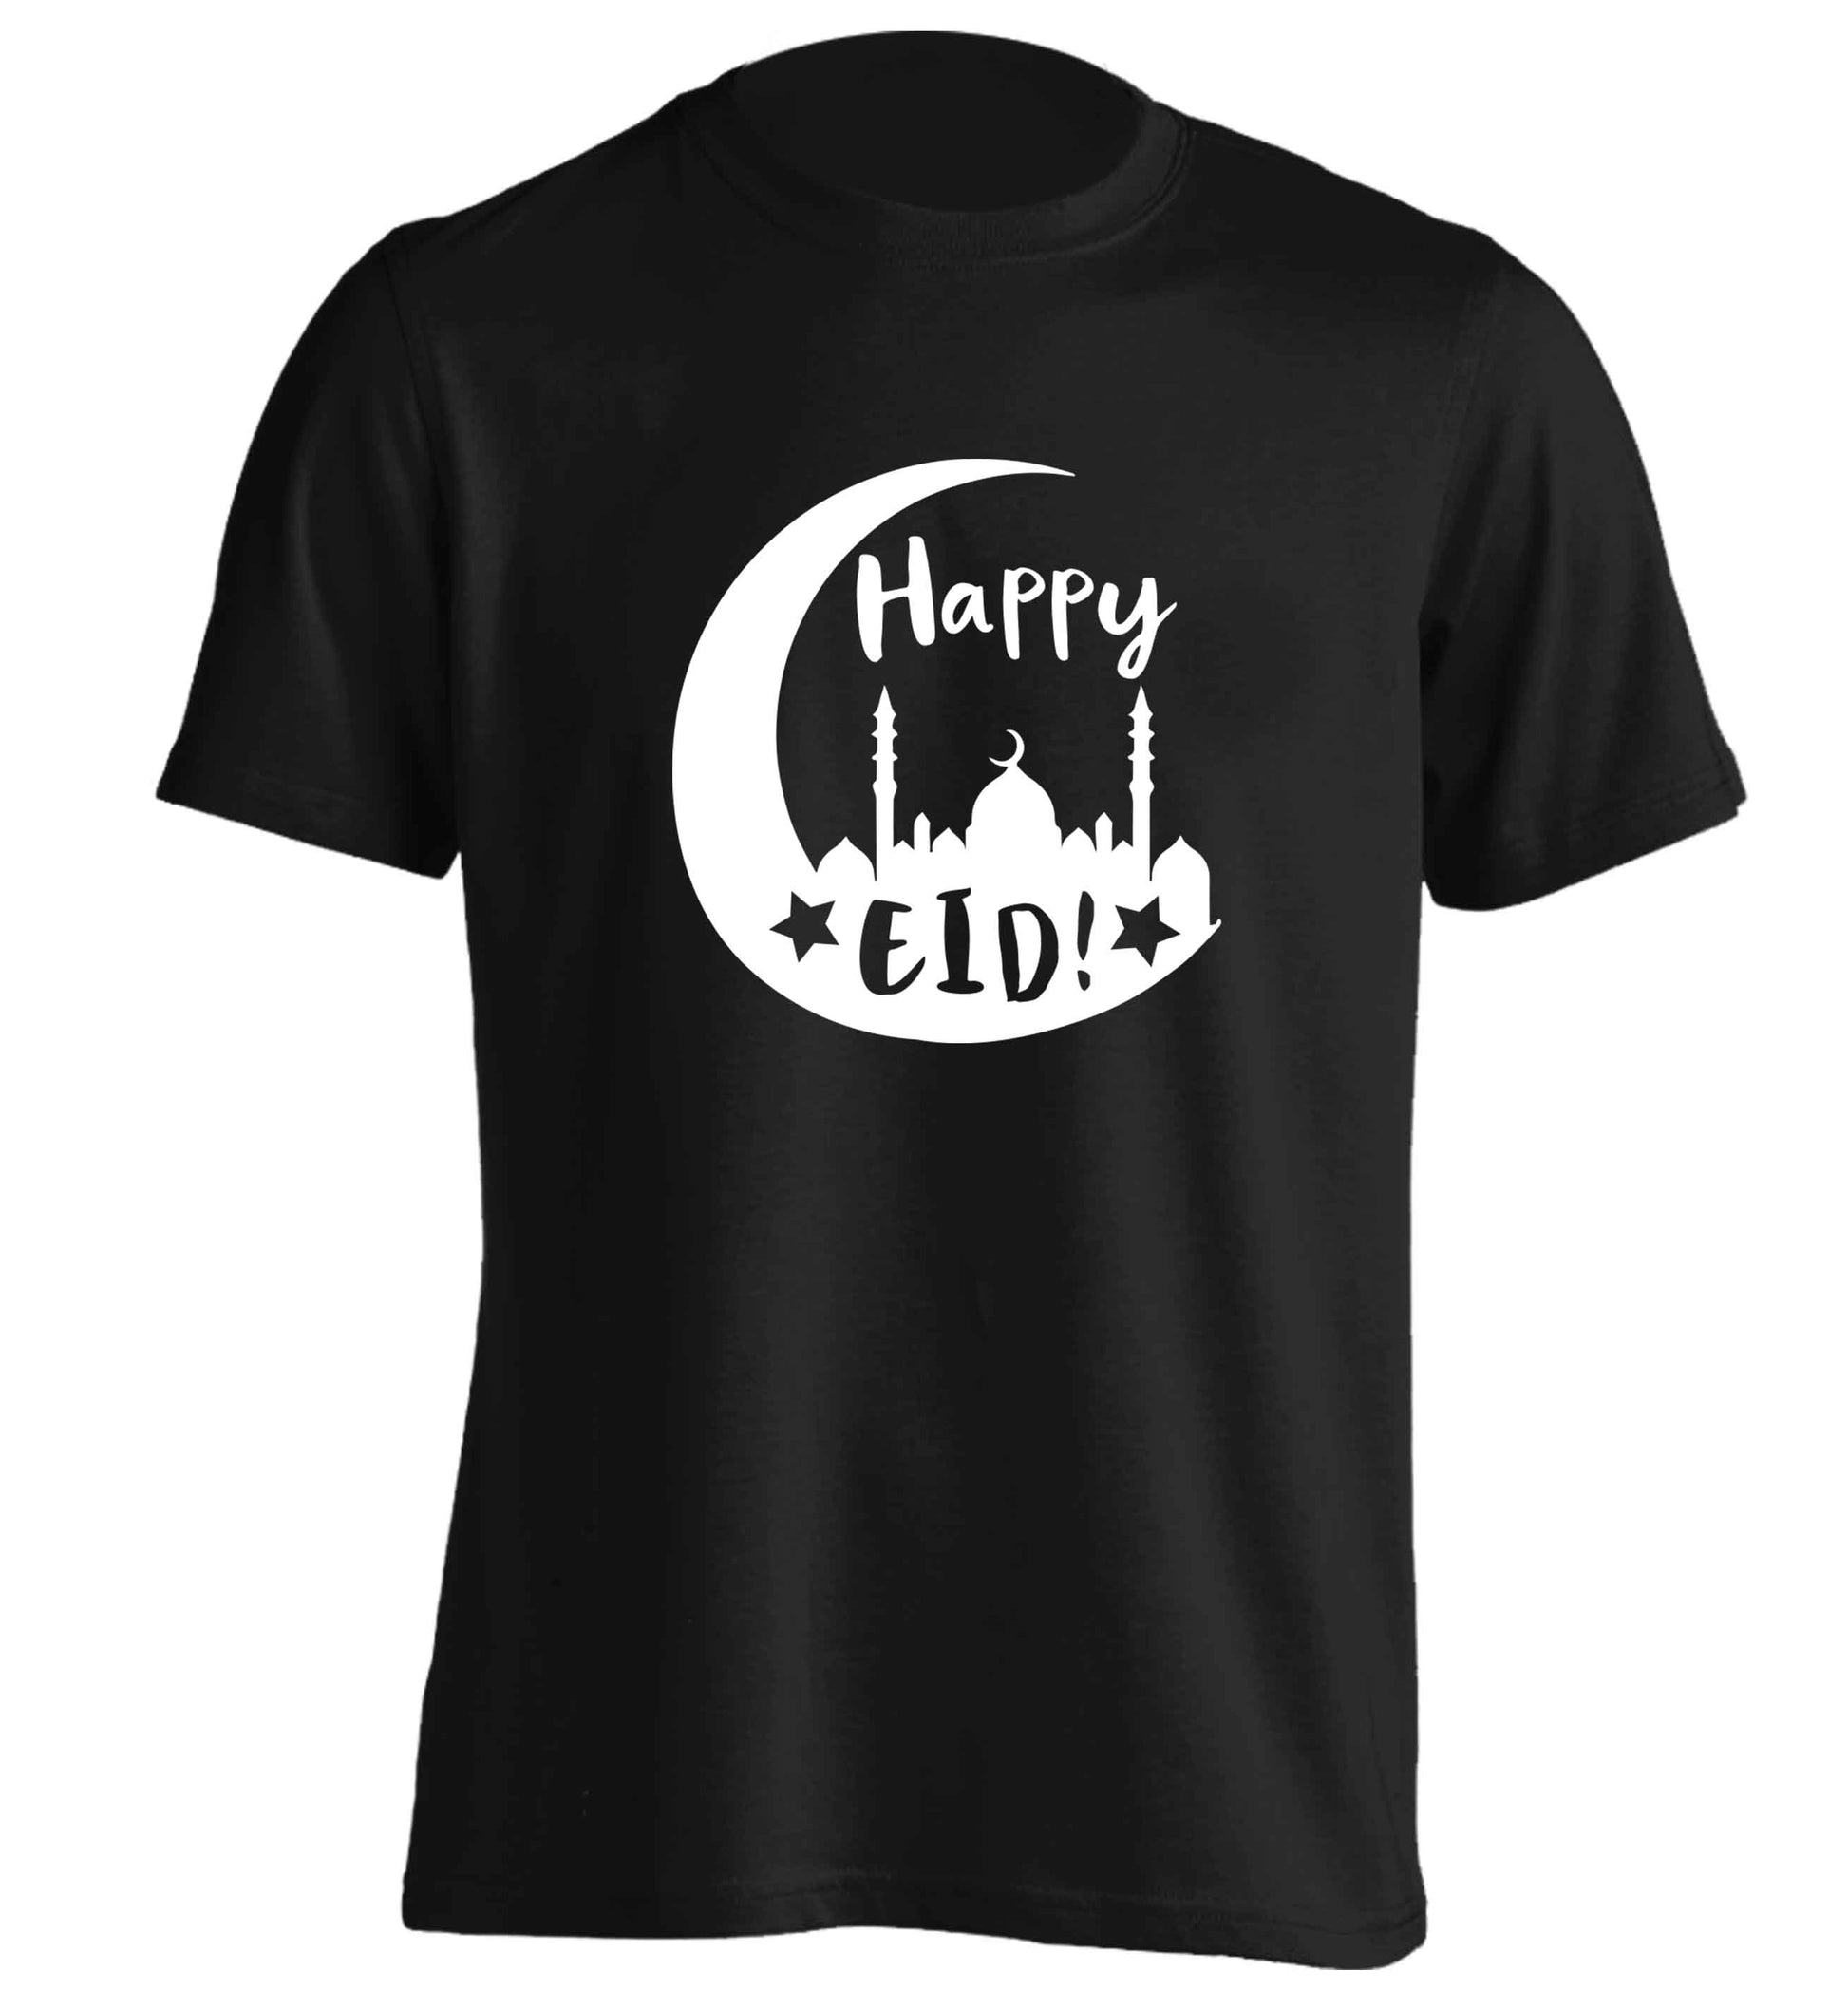 Happy Eid adults unisex black Tshirt 2XL